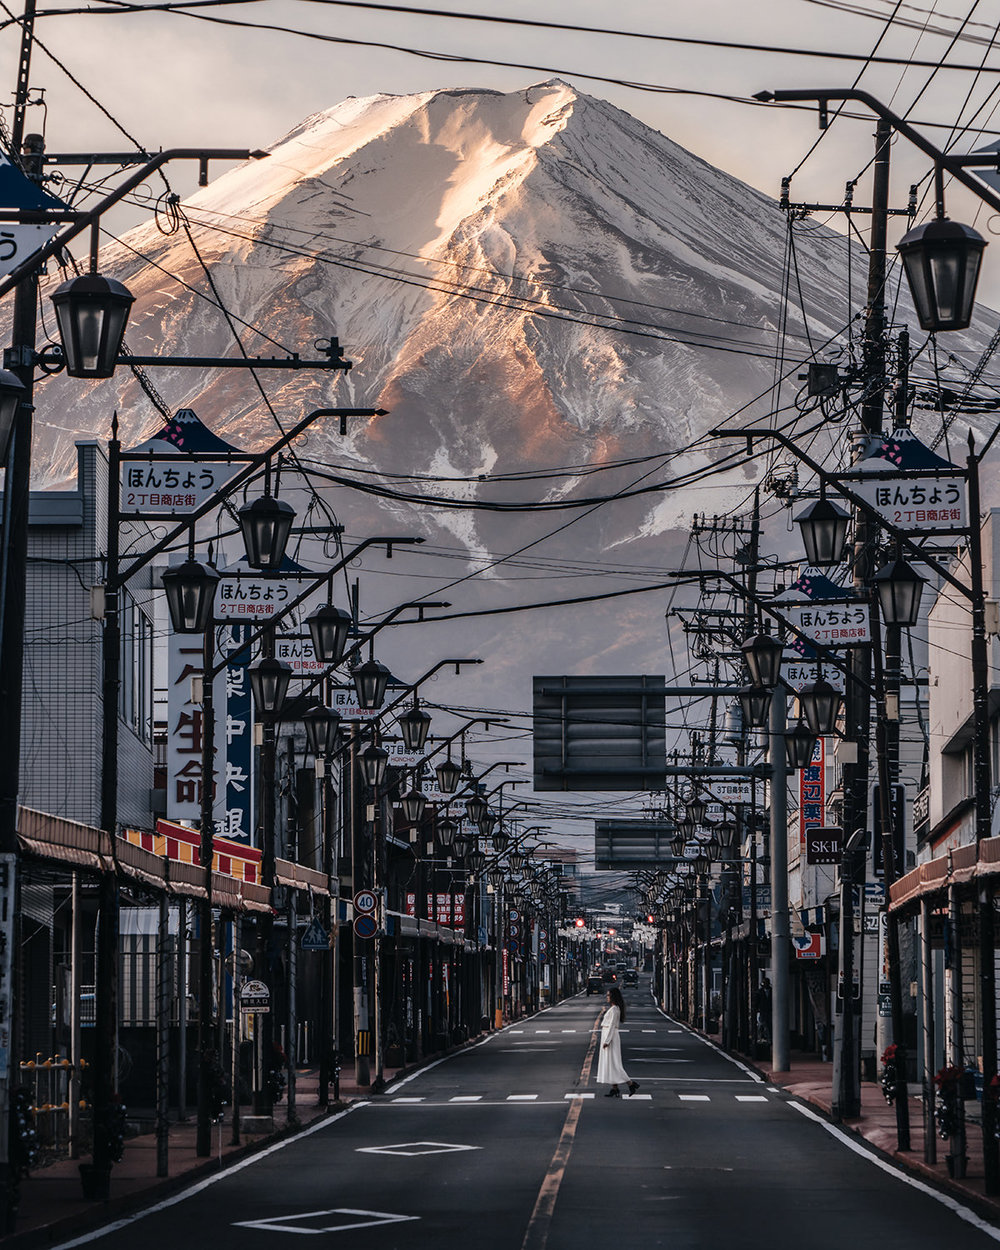 La street photography di RK che ritrae un Giappone in bilico tra tradizione e contemporaneità